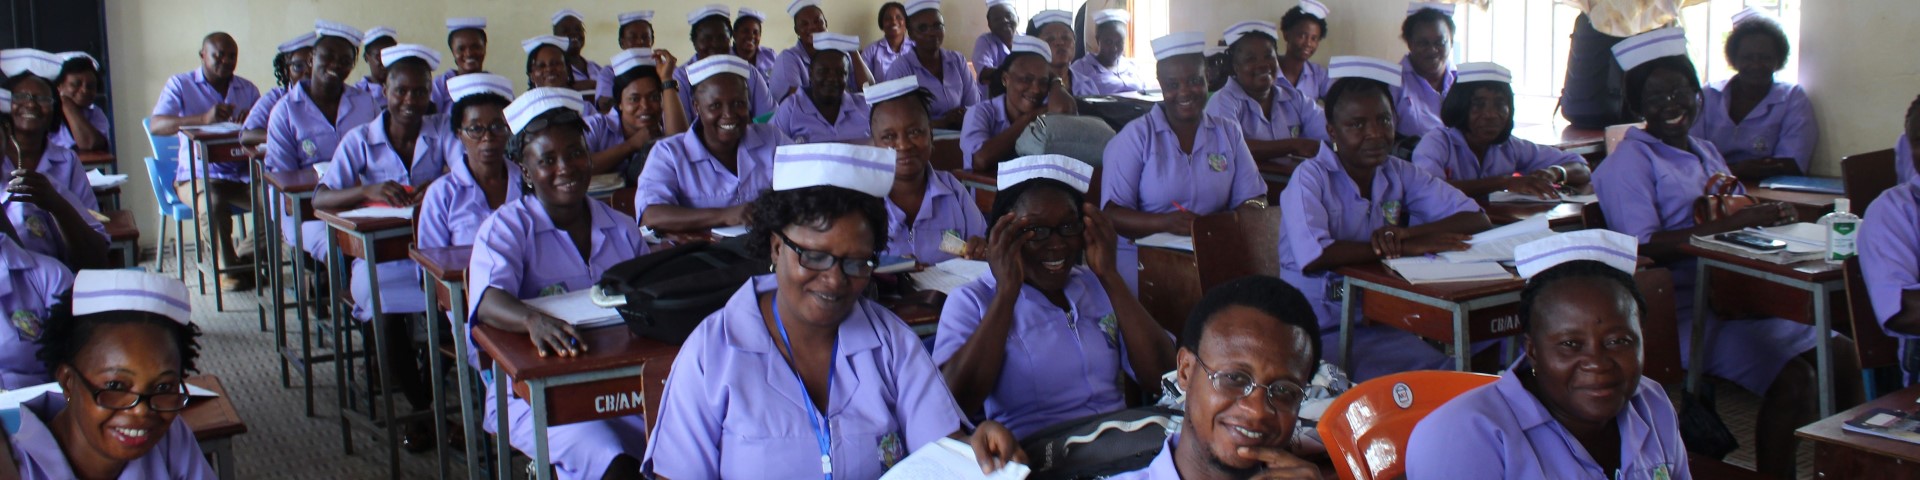 Mitarbeiterinnen des Gesundheitswesens sitzen bei einer Schulung in einem Klassenraum.